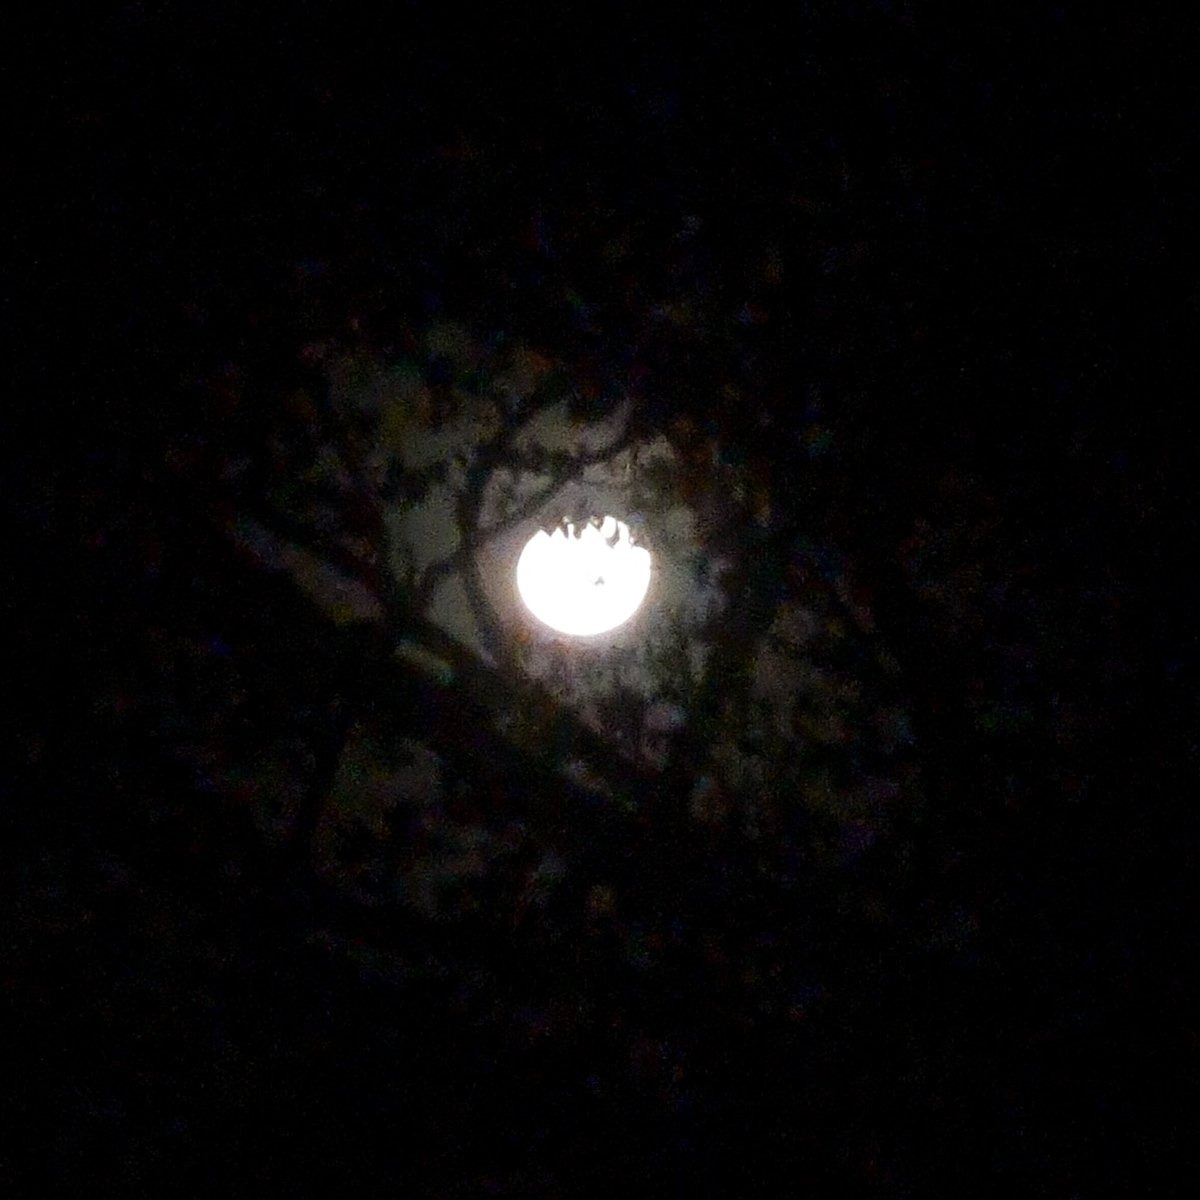 The #moon on #MaundyThursday